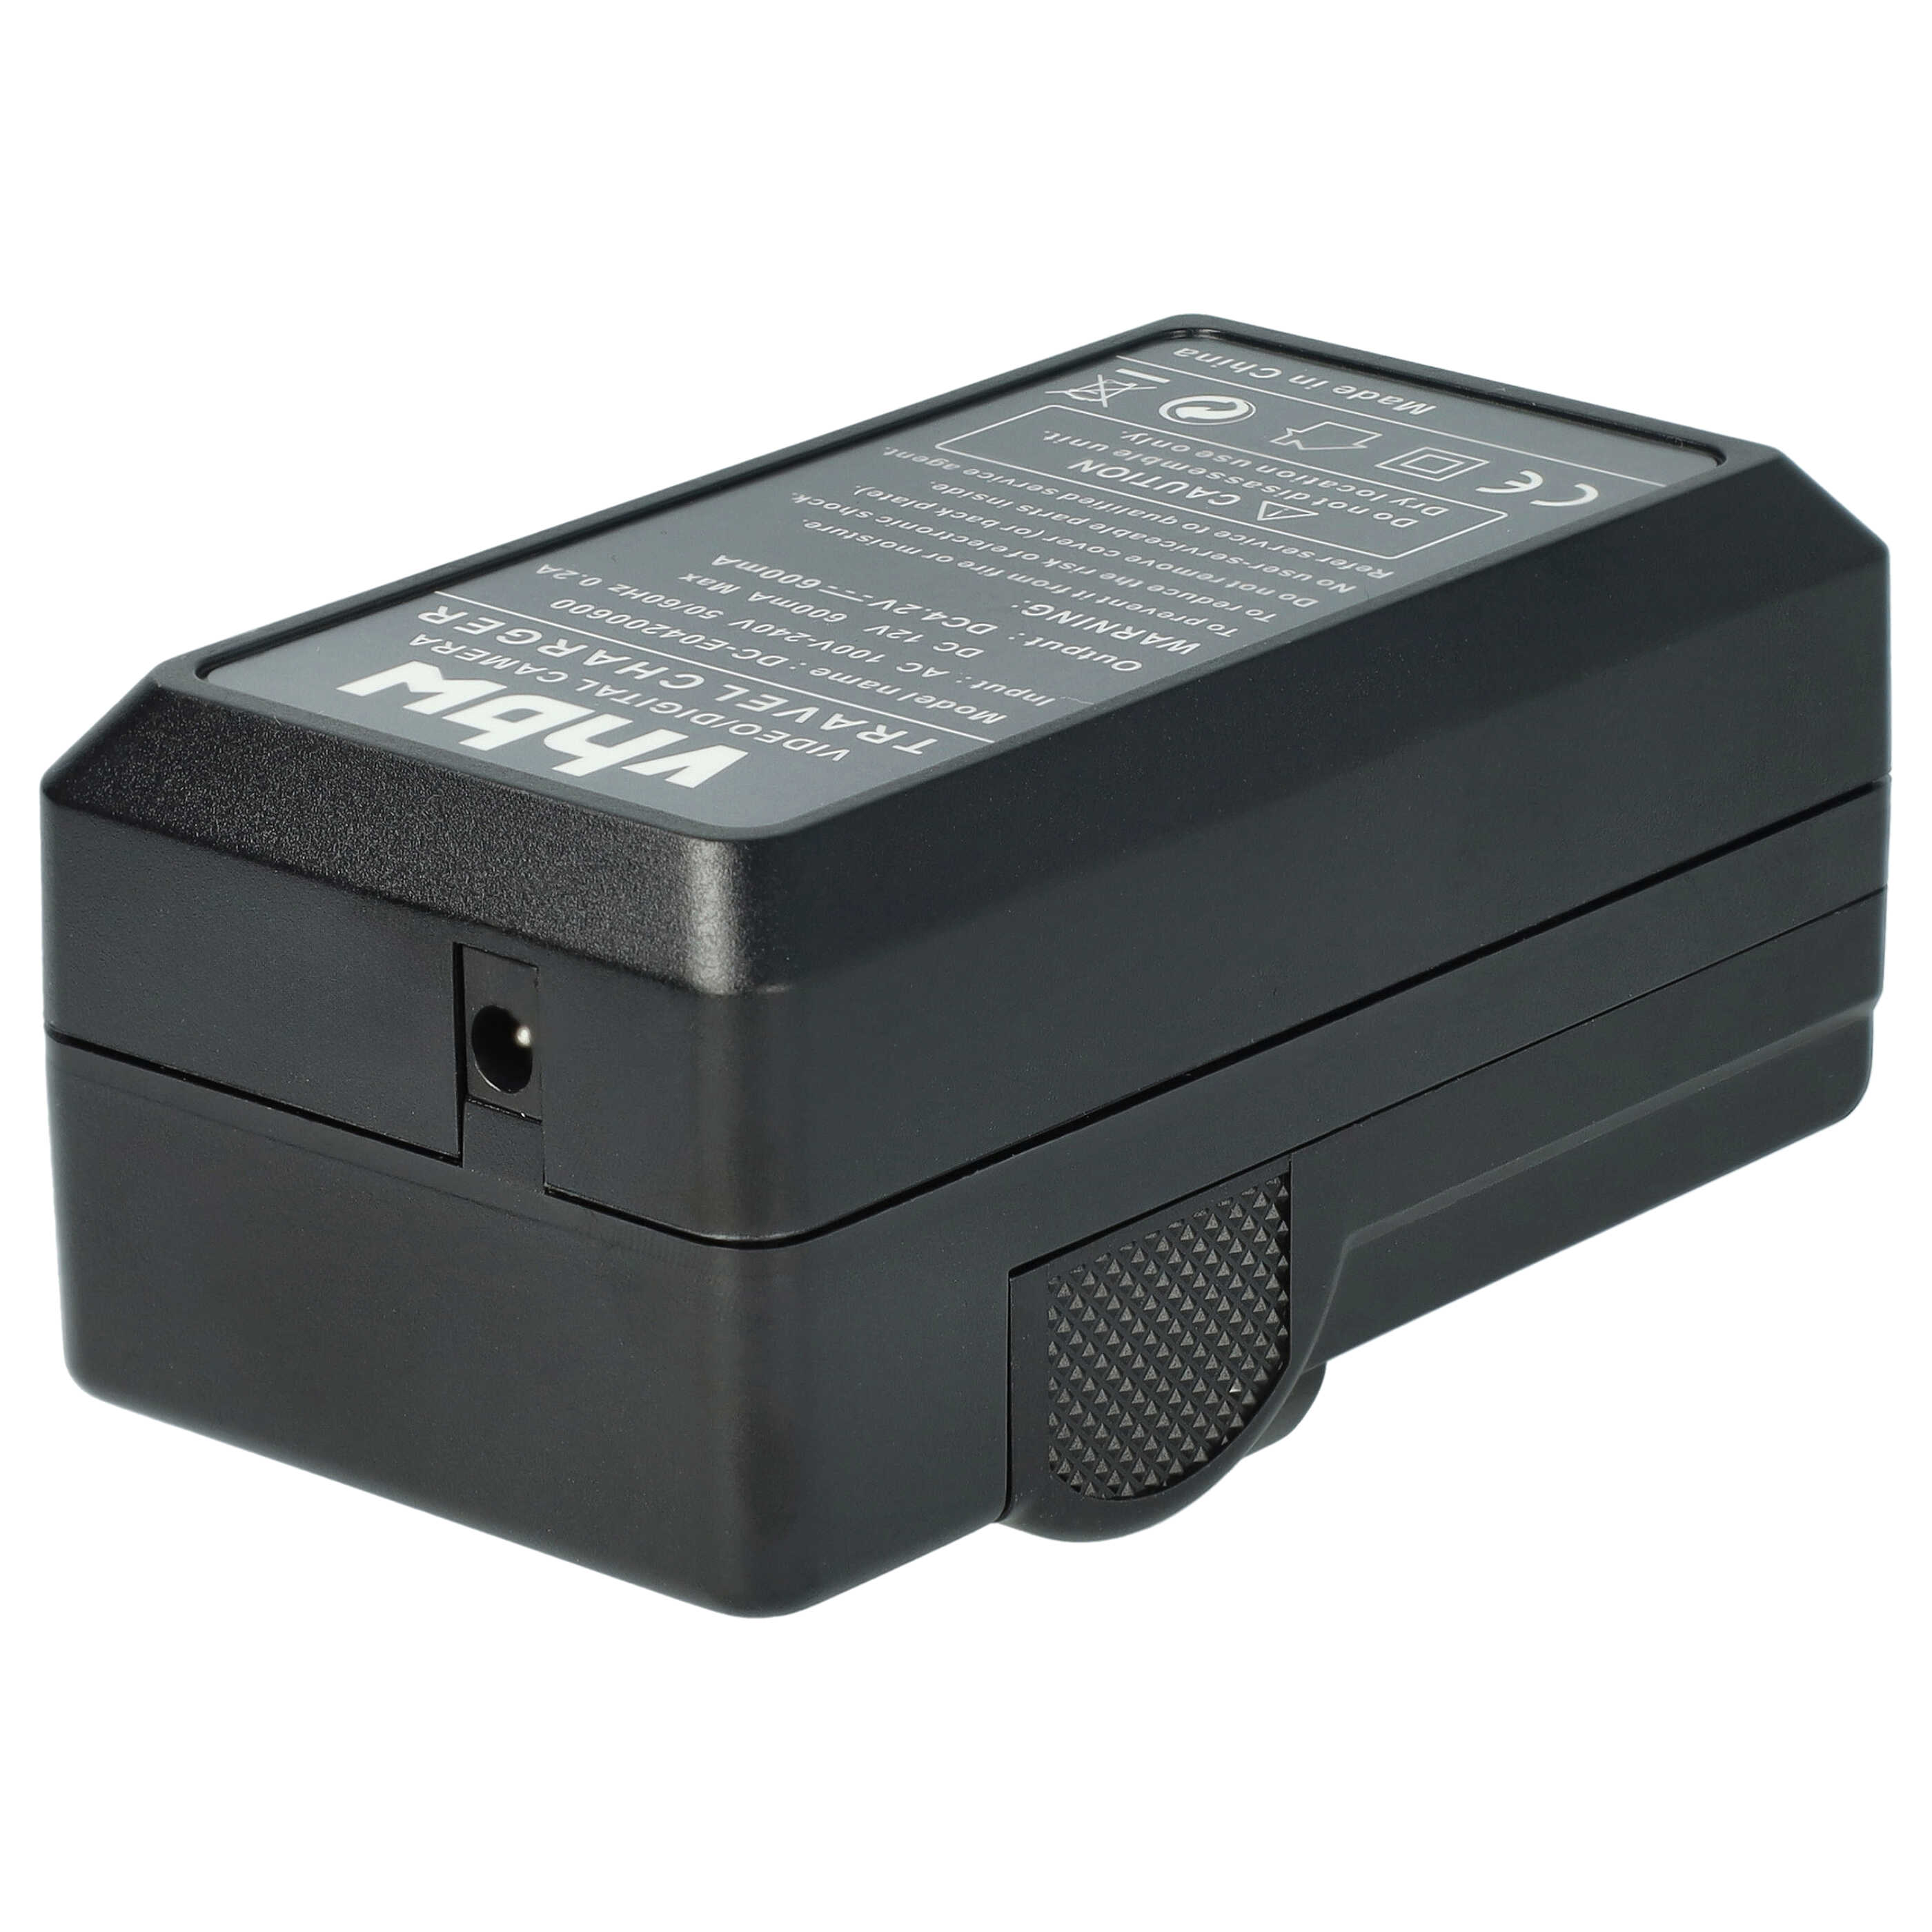 Akku Ladegerät passend für EasyShare Z612 Kamera u.a. - 0,6 A, 4,2 V